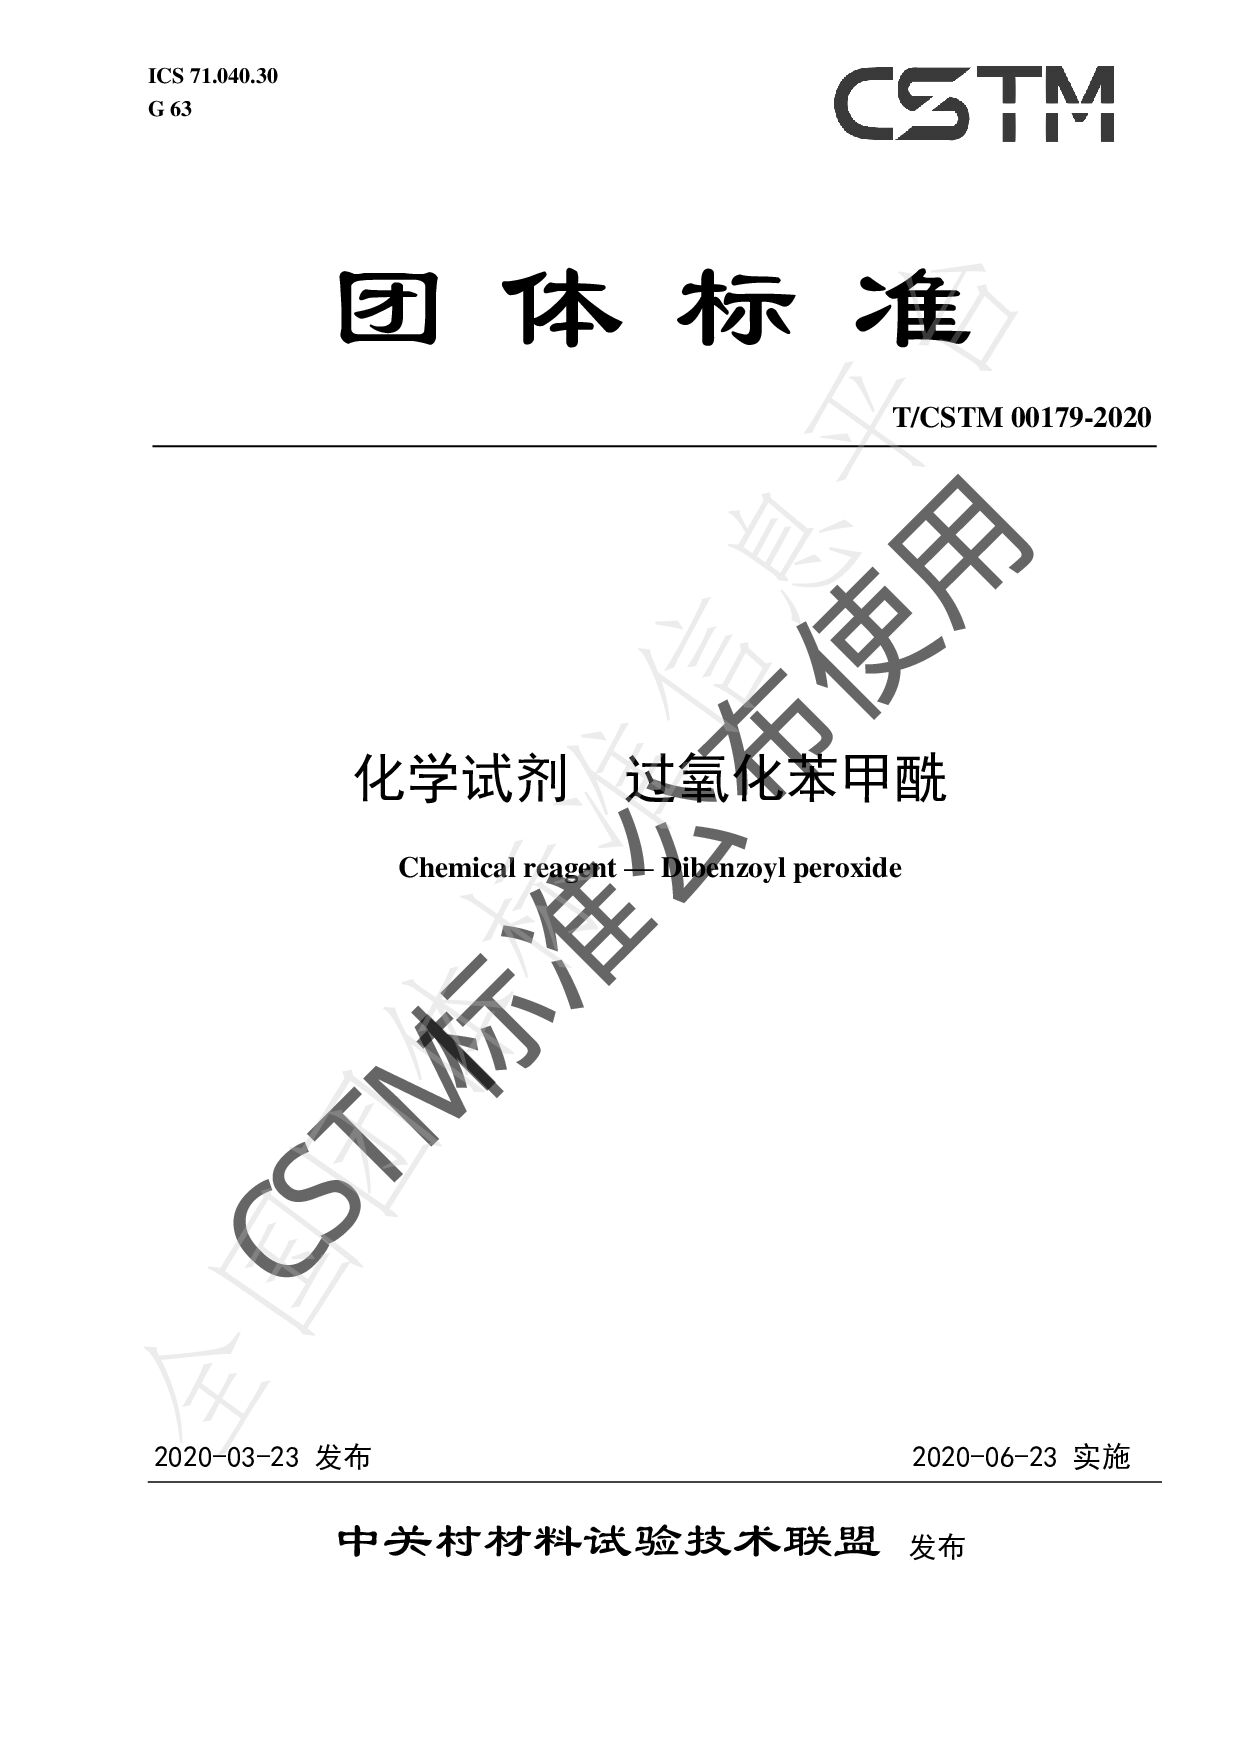 T/CSTM 00179-2020封面图